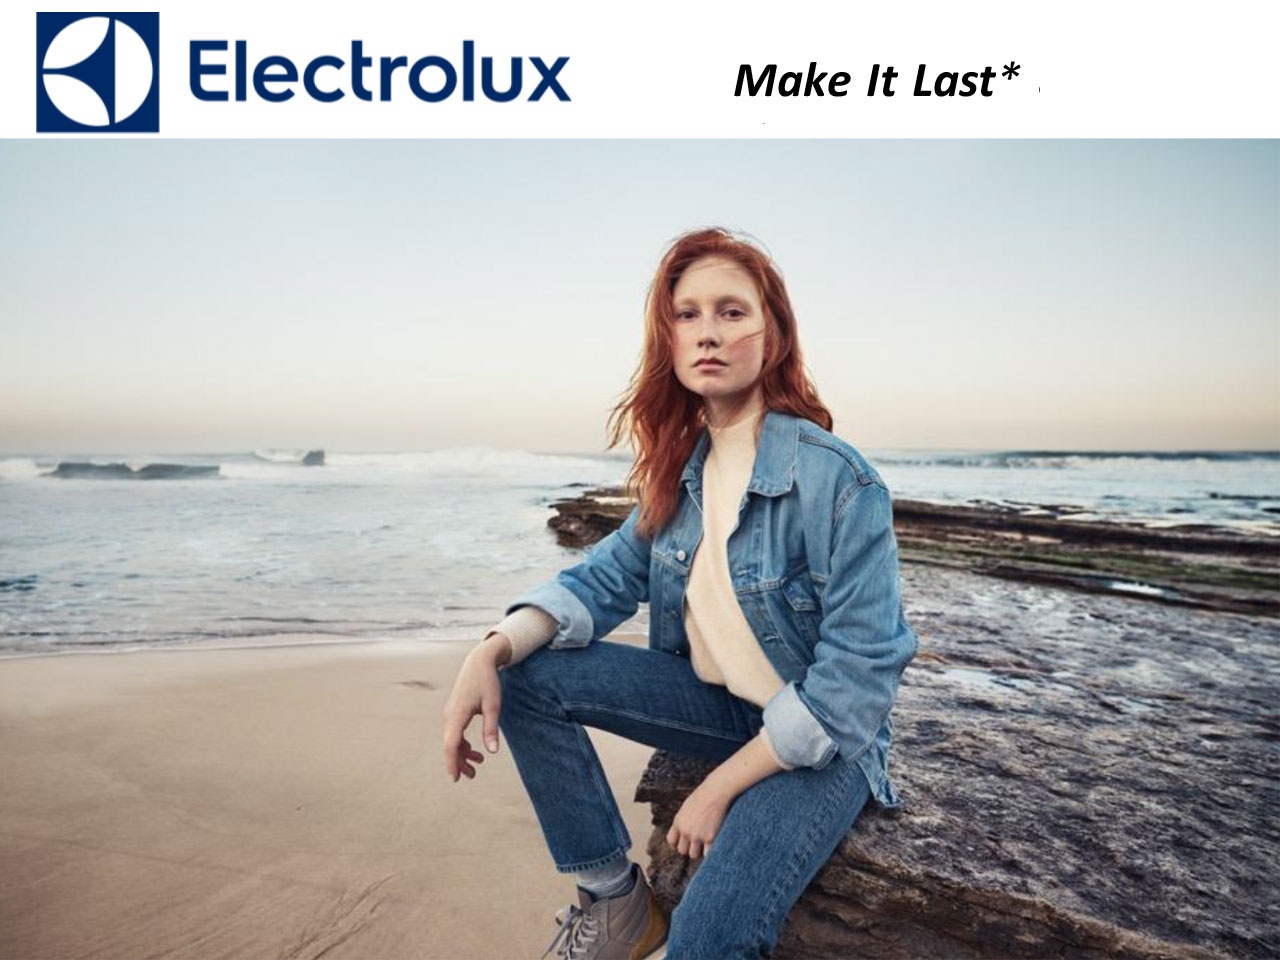 Electrolux avec sa campagne média Make It Last*, s’engage davantage pour prolonger la vie des vêtements!